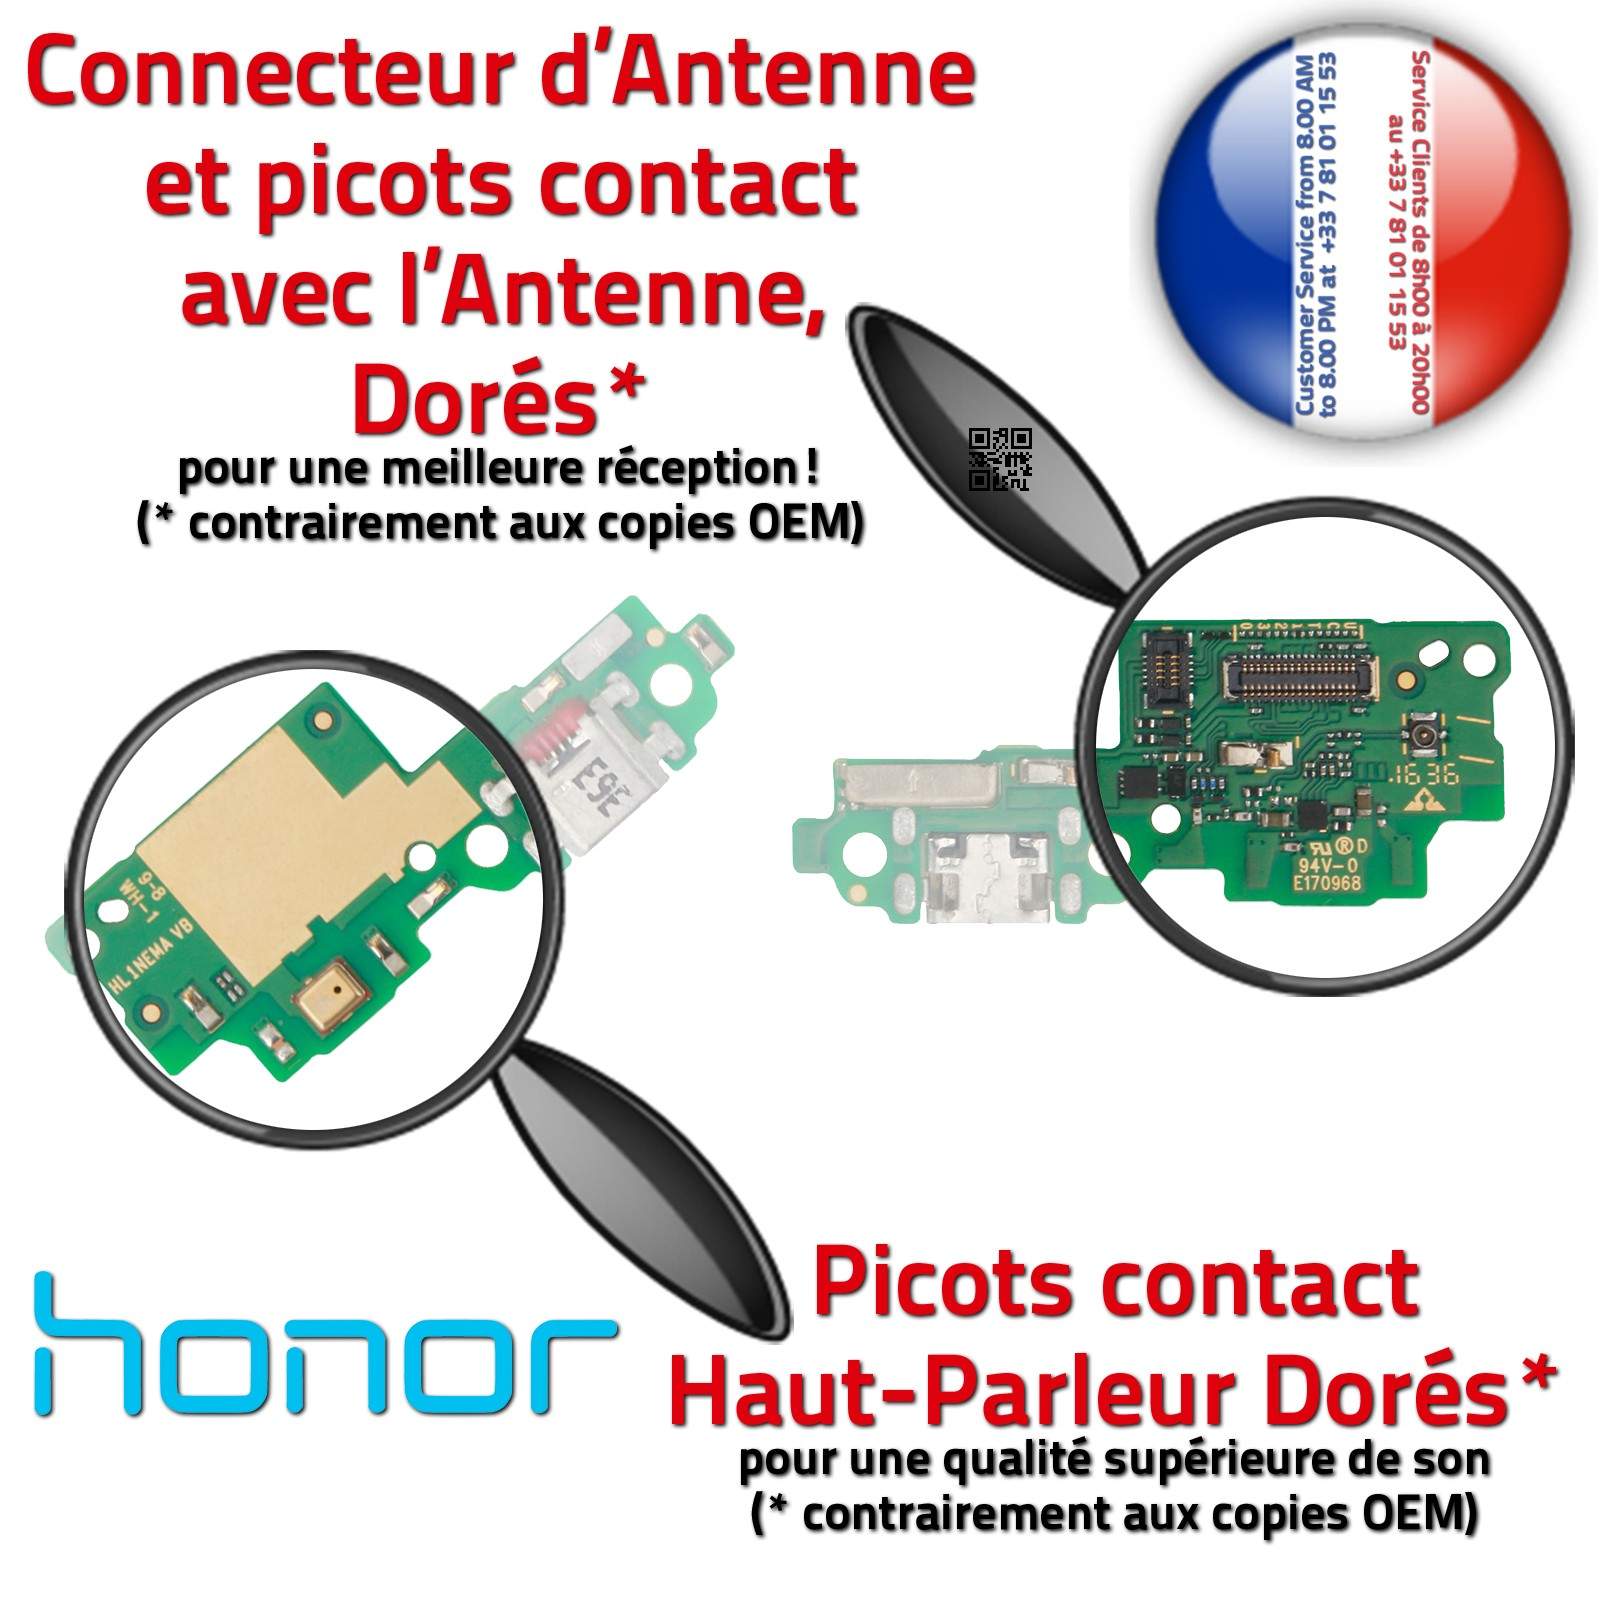 Honor 5C Connecteur de Charge Prise Chargeur Micro USB ORIGINAL Nappe OFFICIELLE Qualité Microphone Antenne RESEAU Câble JACK